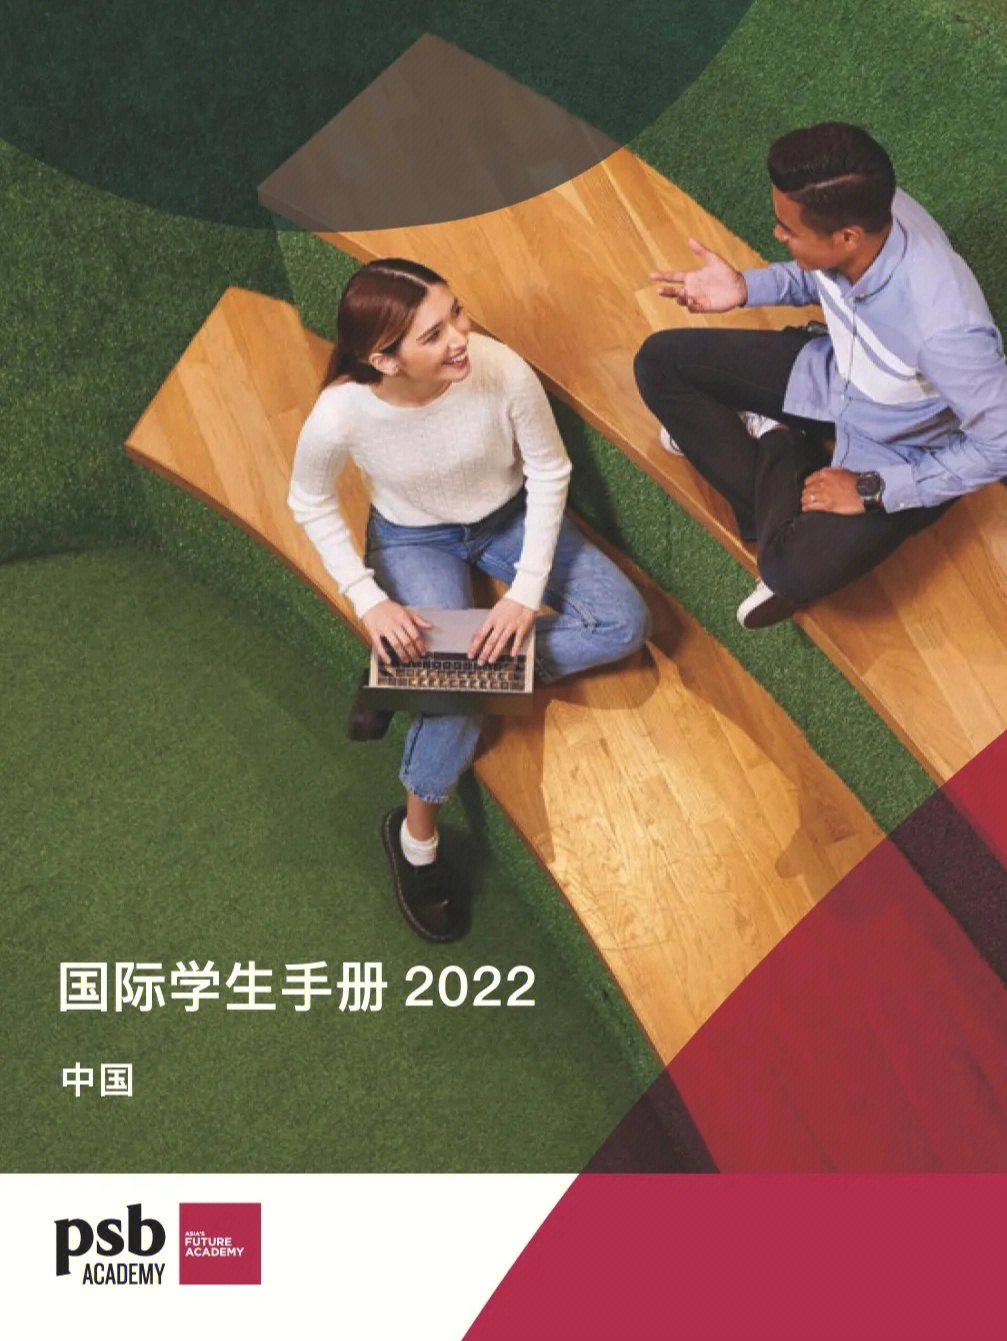 2022年新加坡psb学院国际学生手册中文版